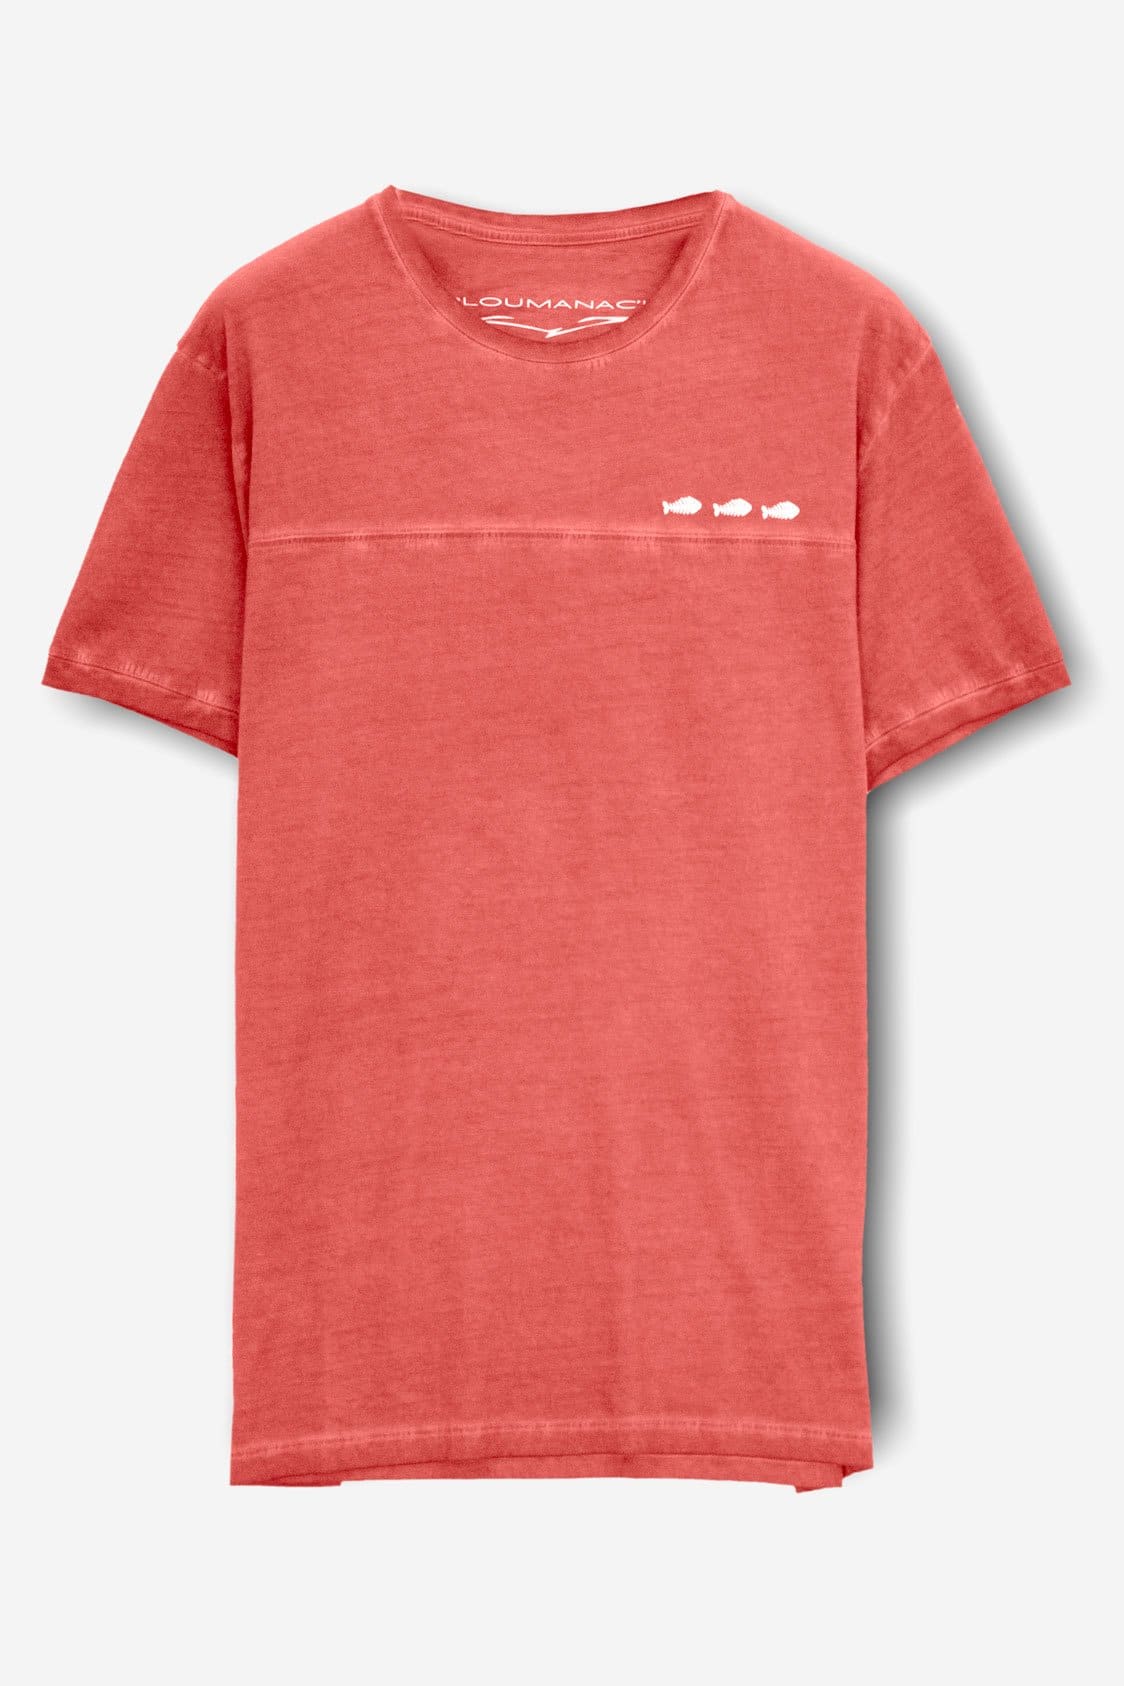 Three FishBone T-Shirt - Hibiscus